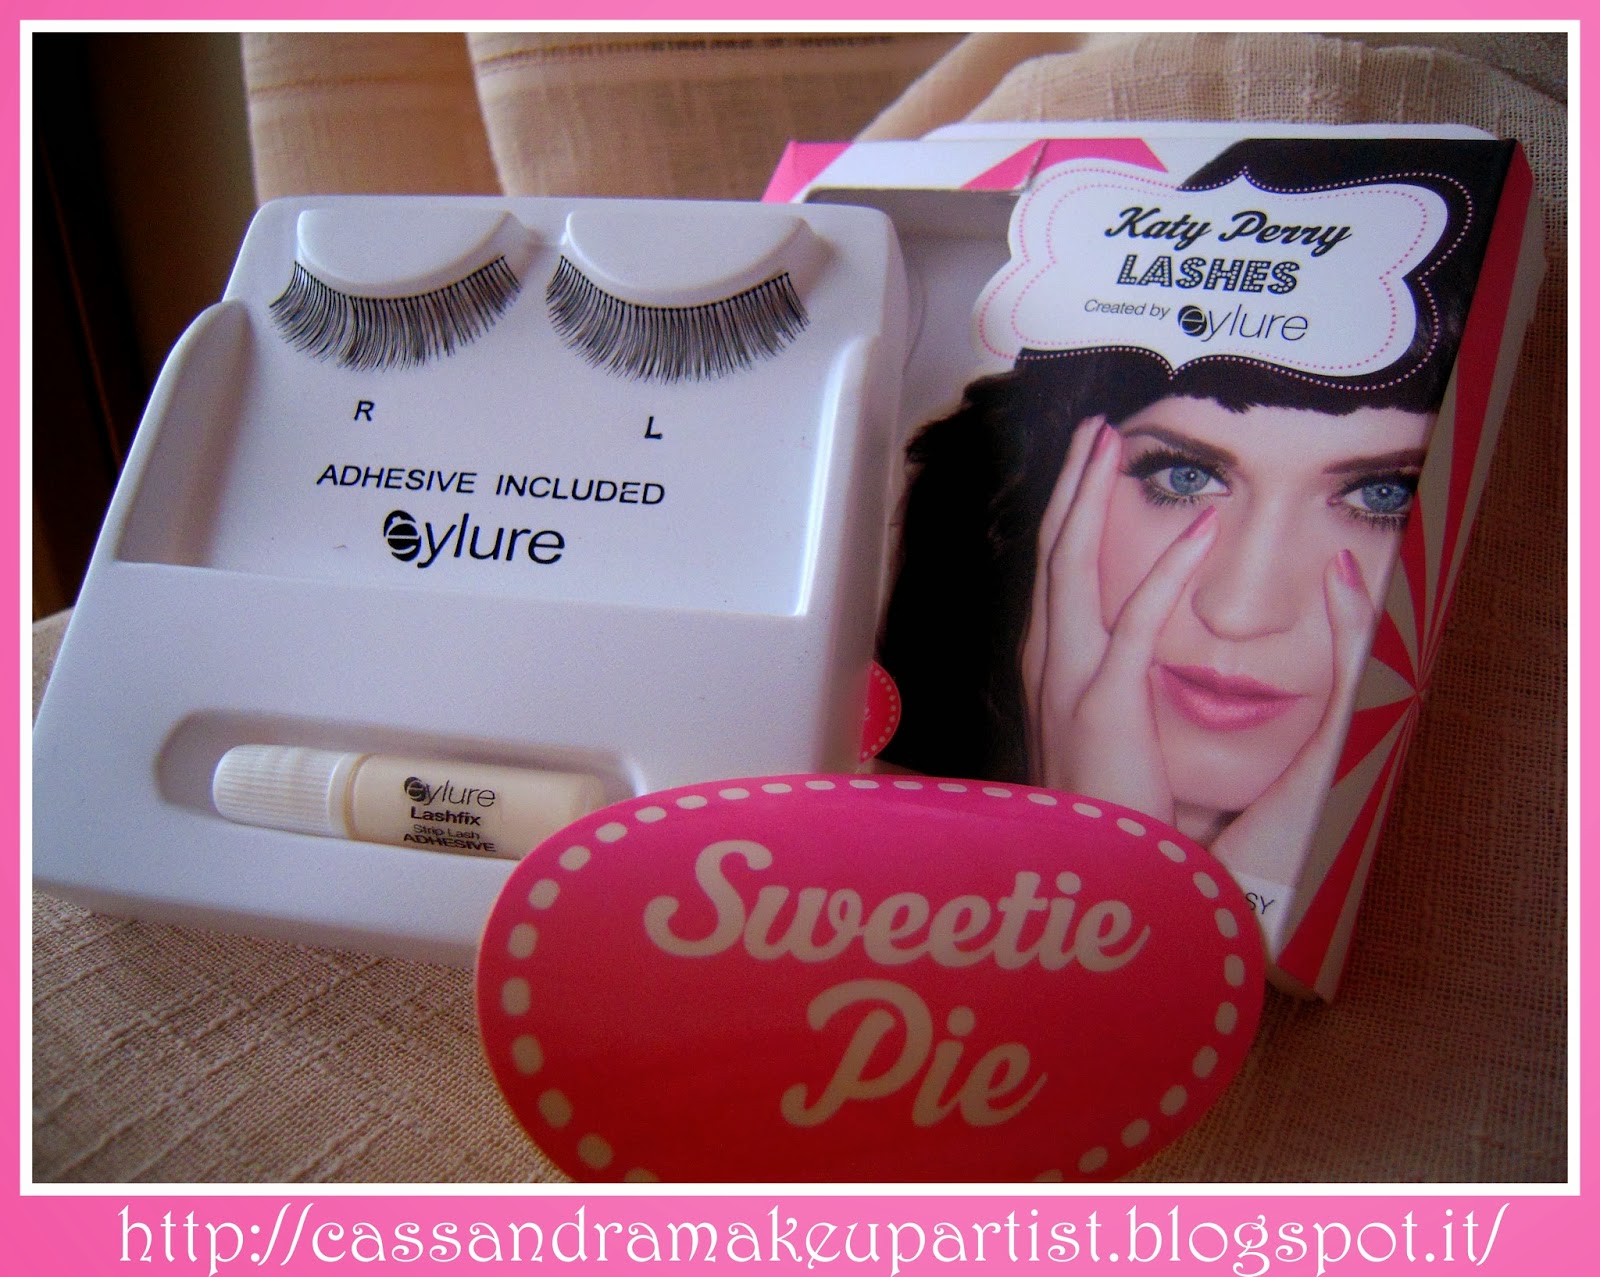 EYLURE - Katy Perry Lashes - SWEETIE PIE -false lashes - ciglia finte - colla - prezzo - price - recensione - review - nude - naturali - glue - ciglia a nastro - tutorial - lashes adhesive